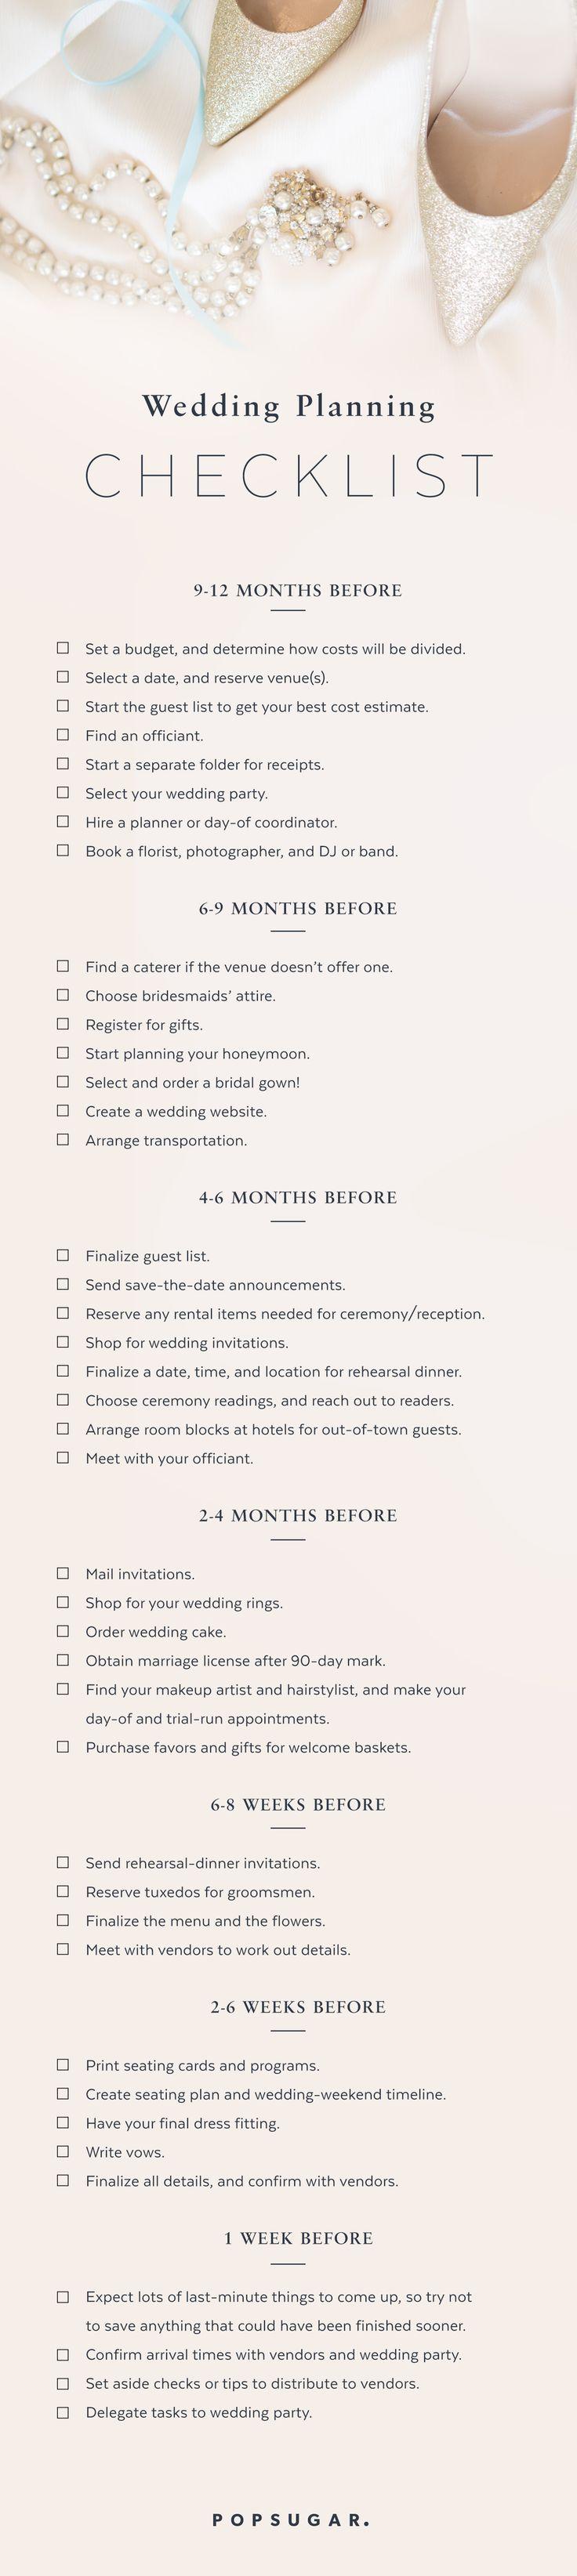 Hochzeit - Download The Ultimate Wedding Planning Checklist!